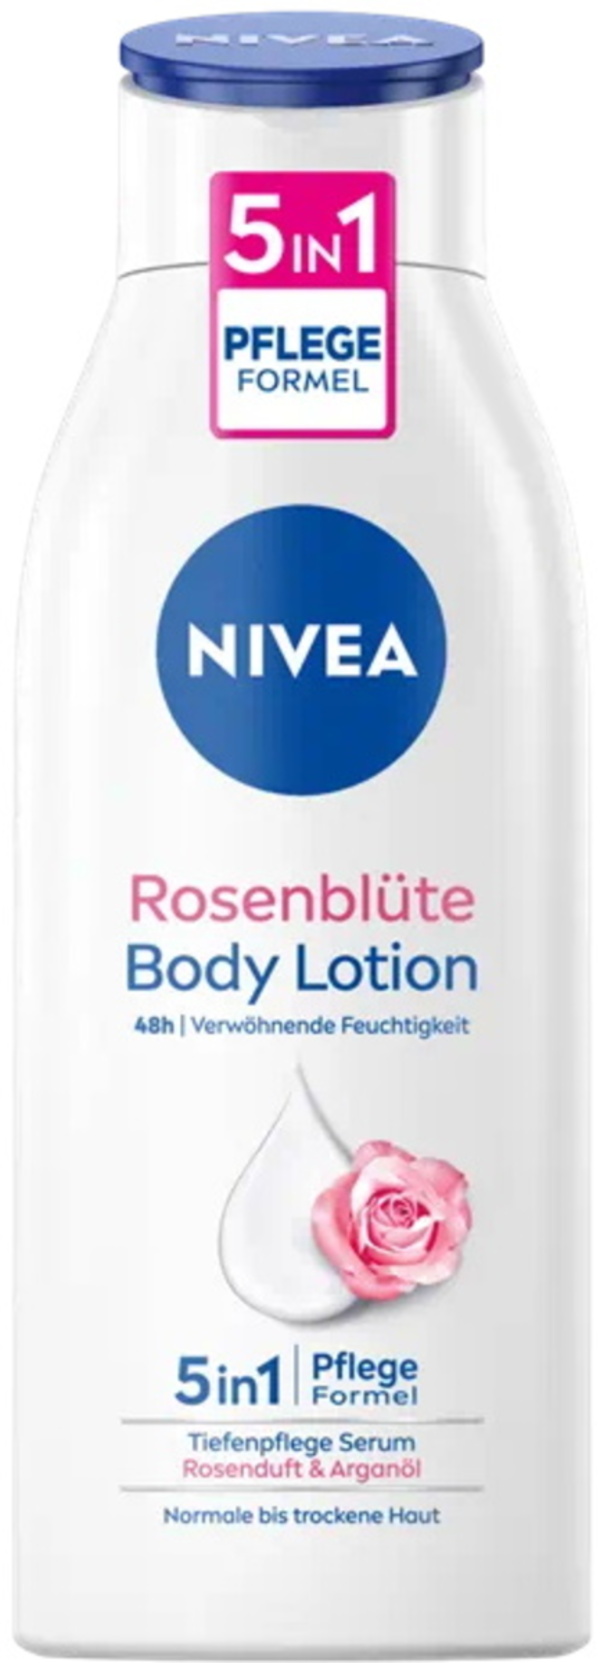 Bild 1 von Nivea Body Lotion Rosenblüte Tiefenpflege Serum Arganöl 48h 400ML